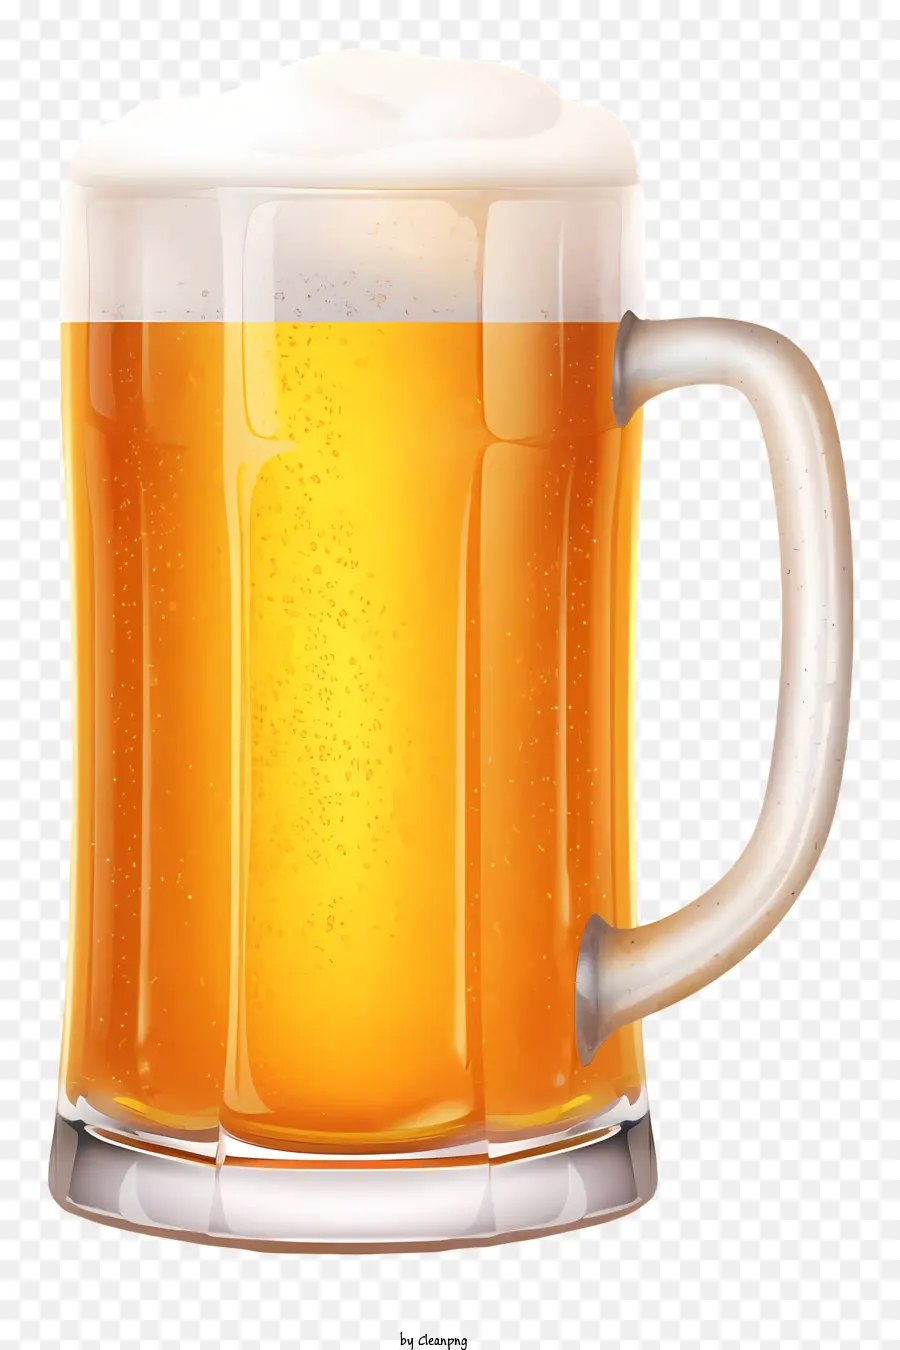 glass mug beer foam golden beer unfiltered beer